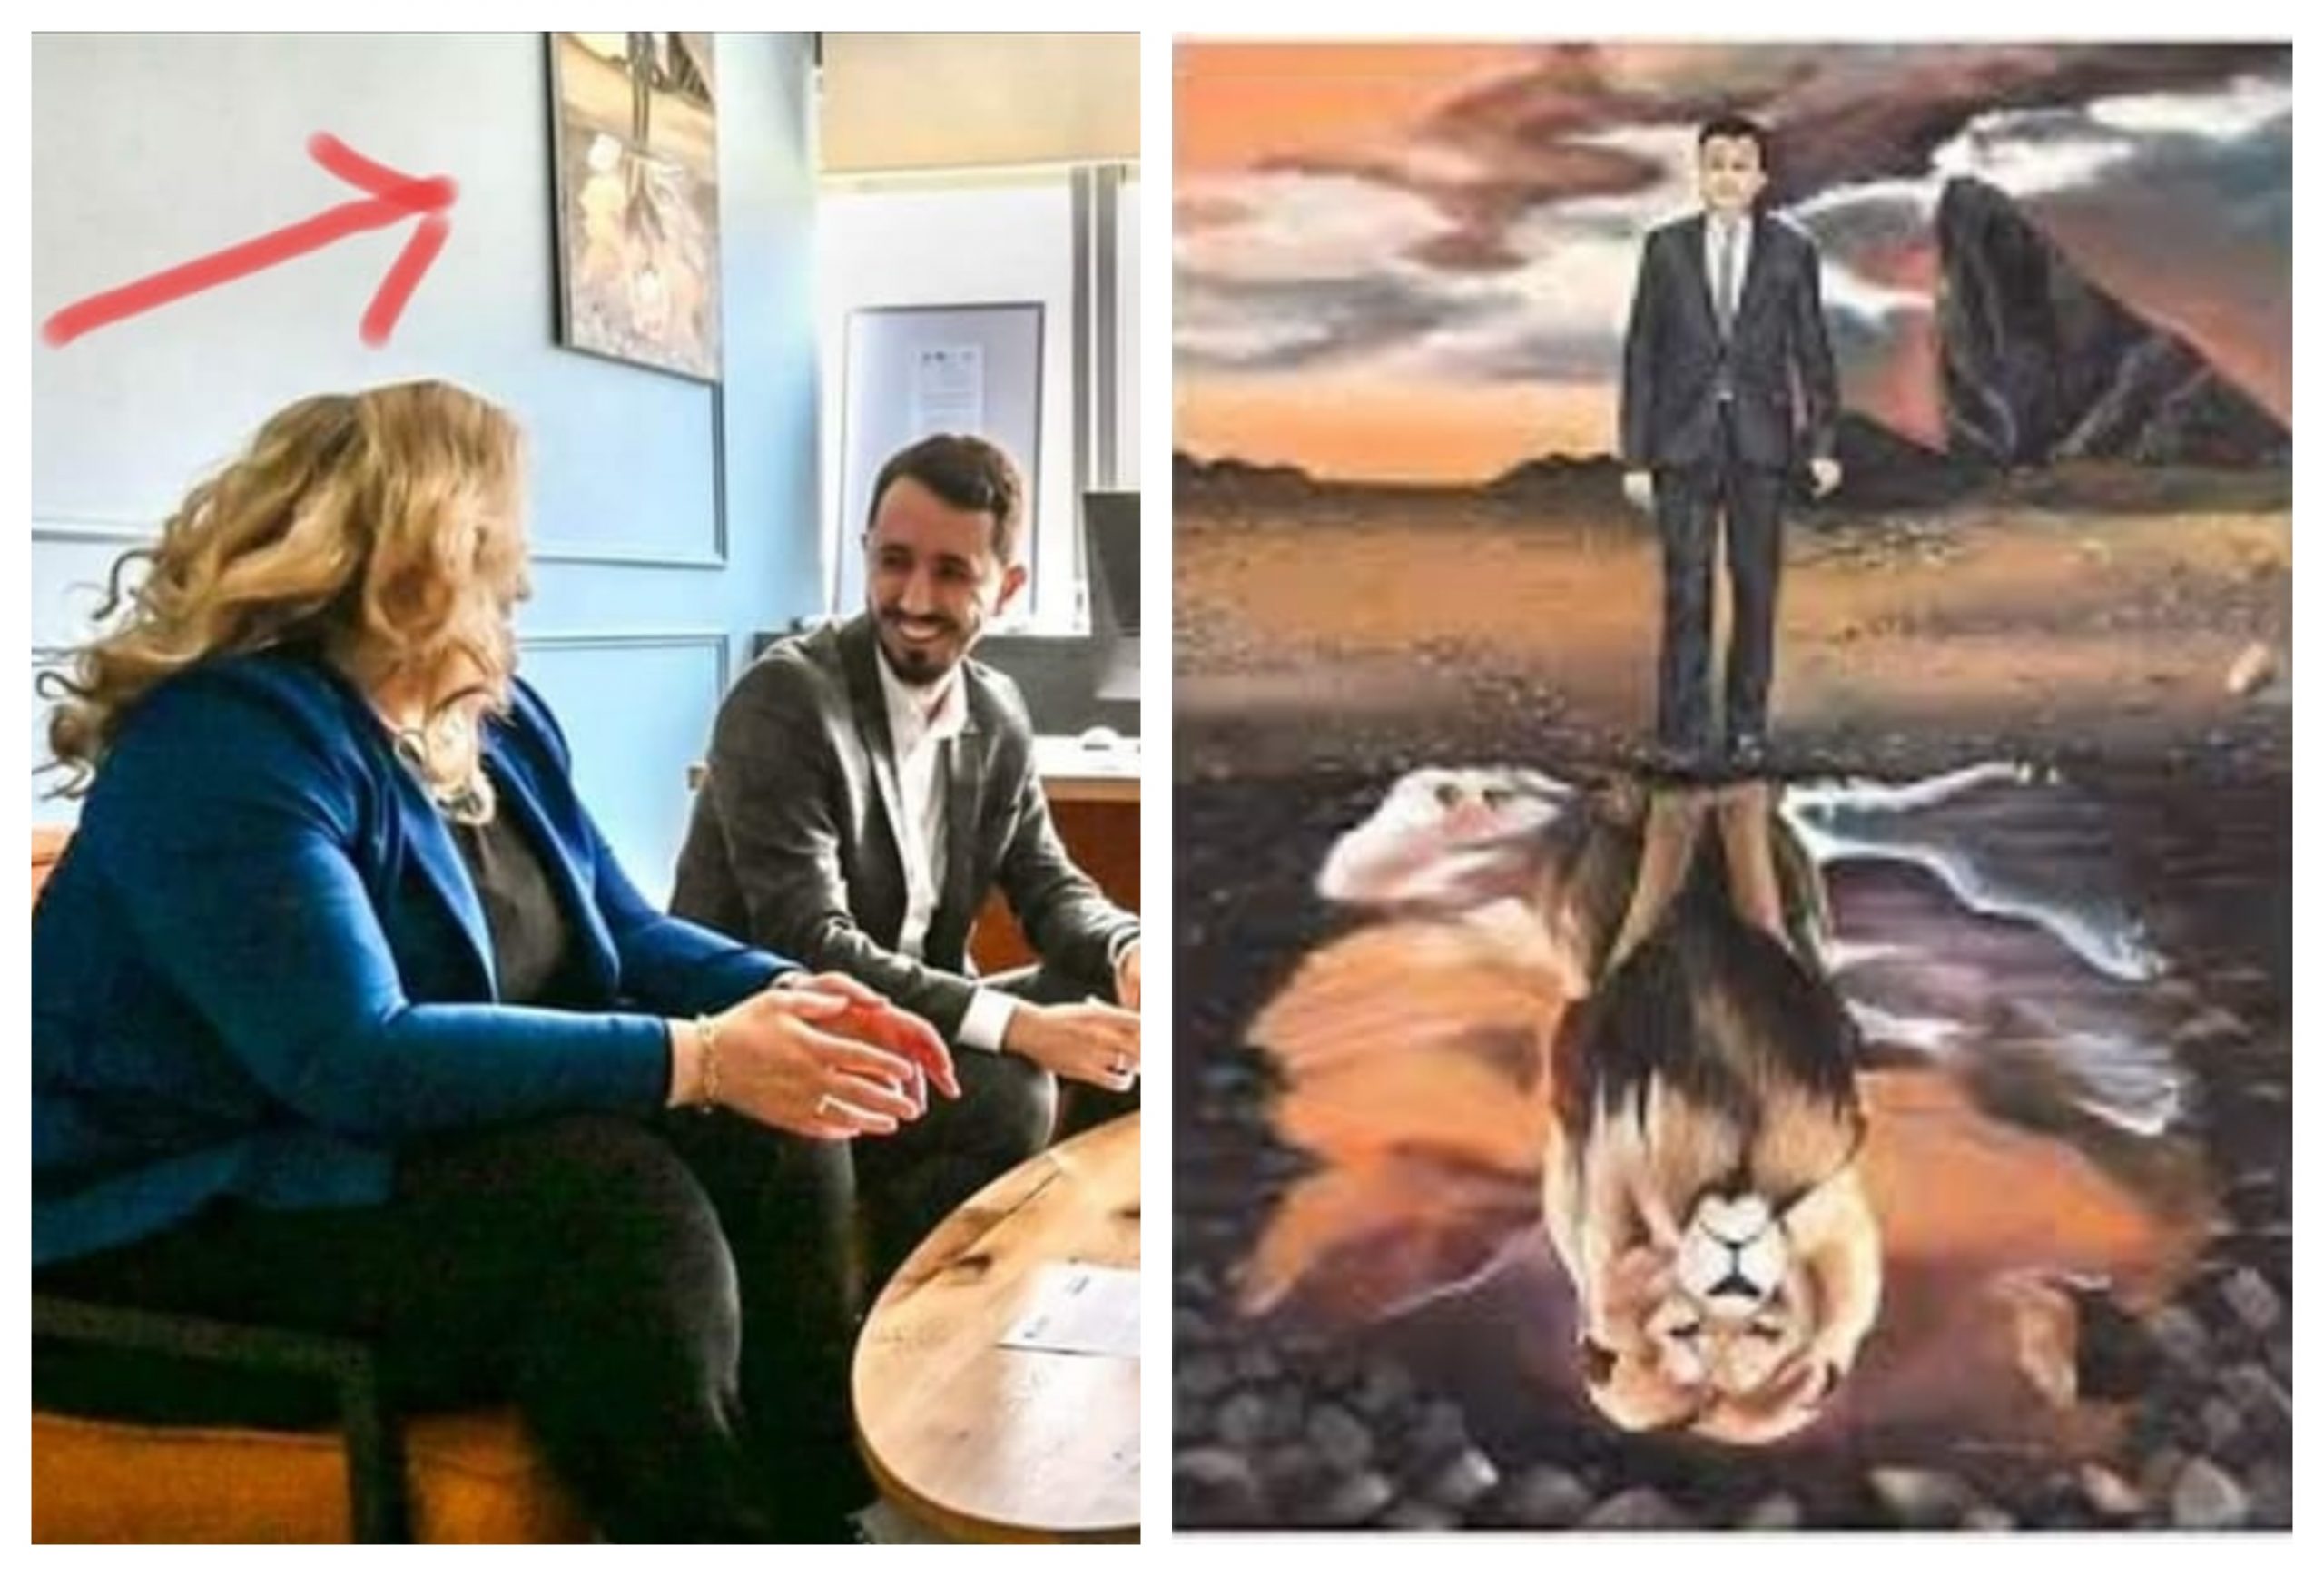 Nushi publikon foton: Kryetari i Kamenicës mban në zyre pikturën ku Kurti paraqitet si luan